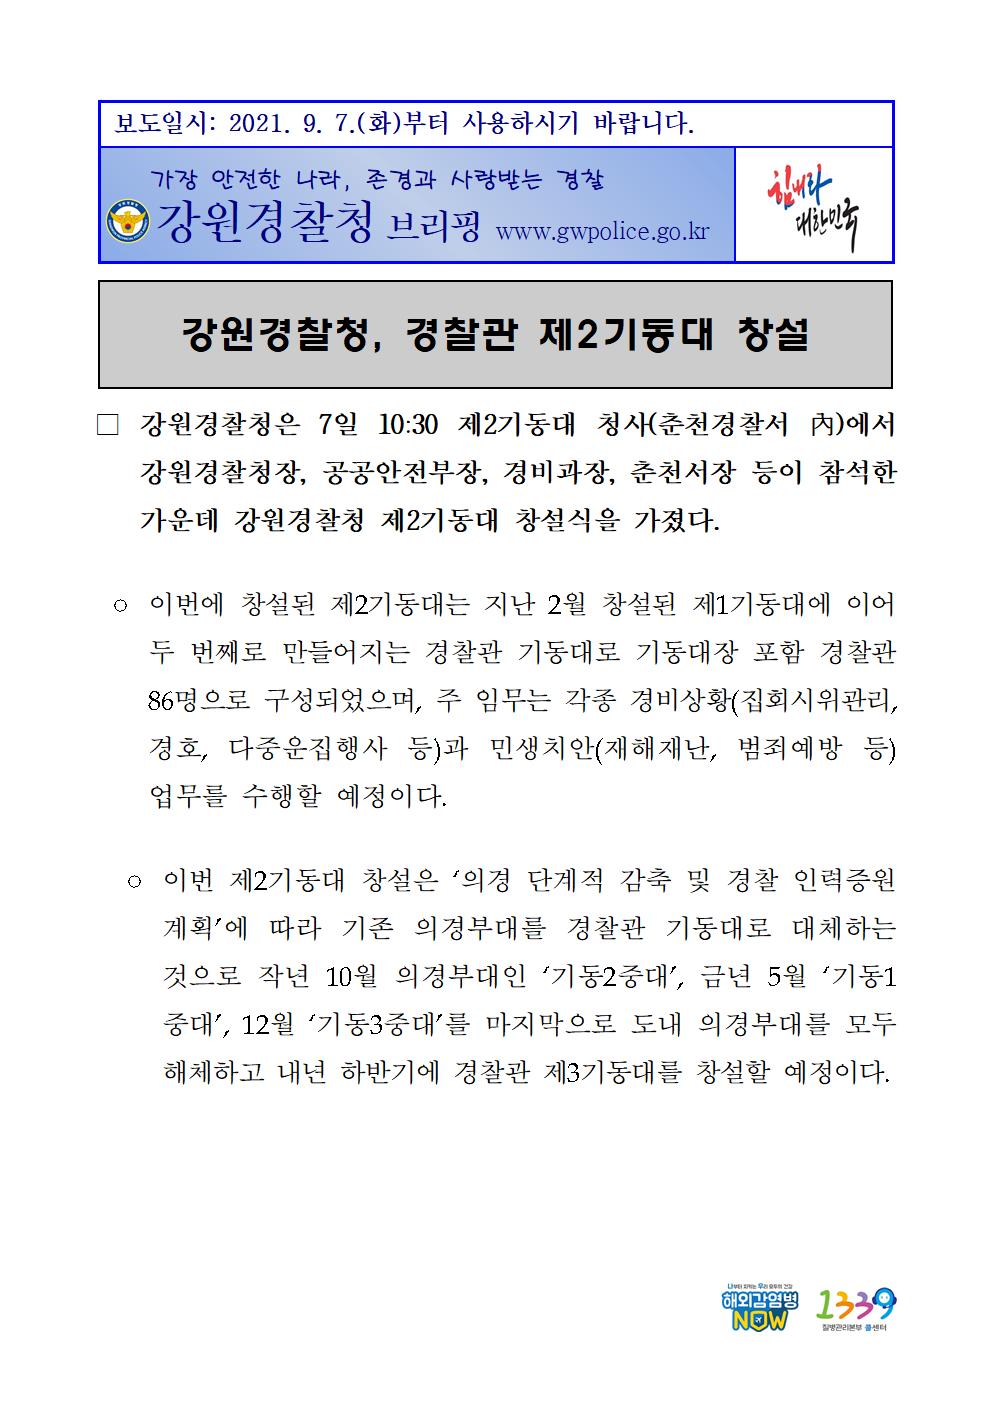  강원경찰 2기동대 창설 보도자료-강원경찰 2기동대 창설 보도자료001